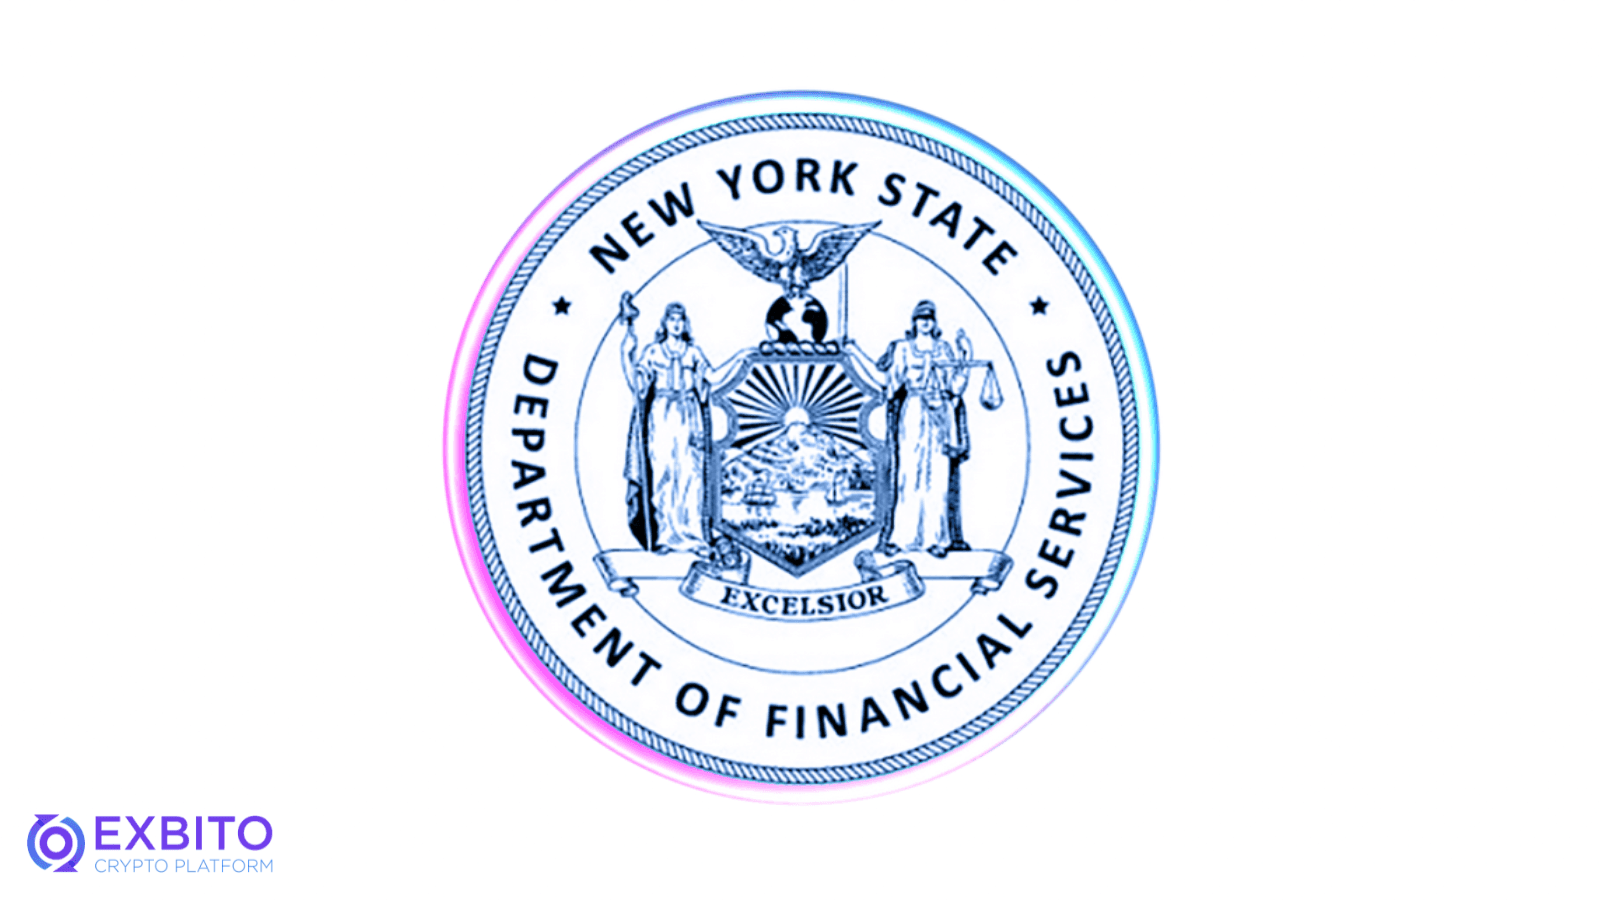 پکس گلد تحت نظارت اداره خدمات مالی ایالت نیویورک (NYDFS) است